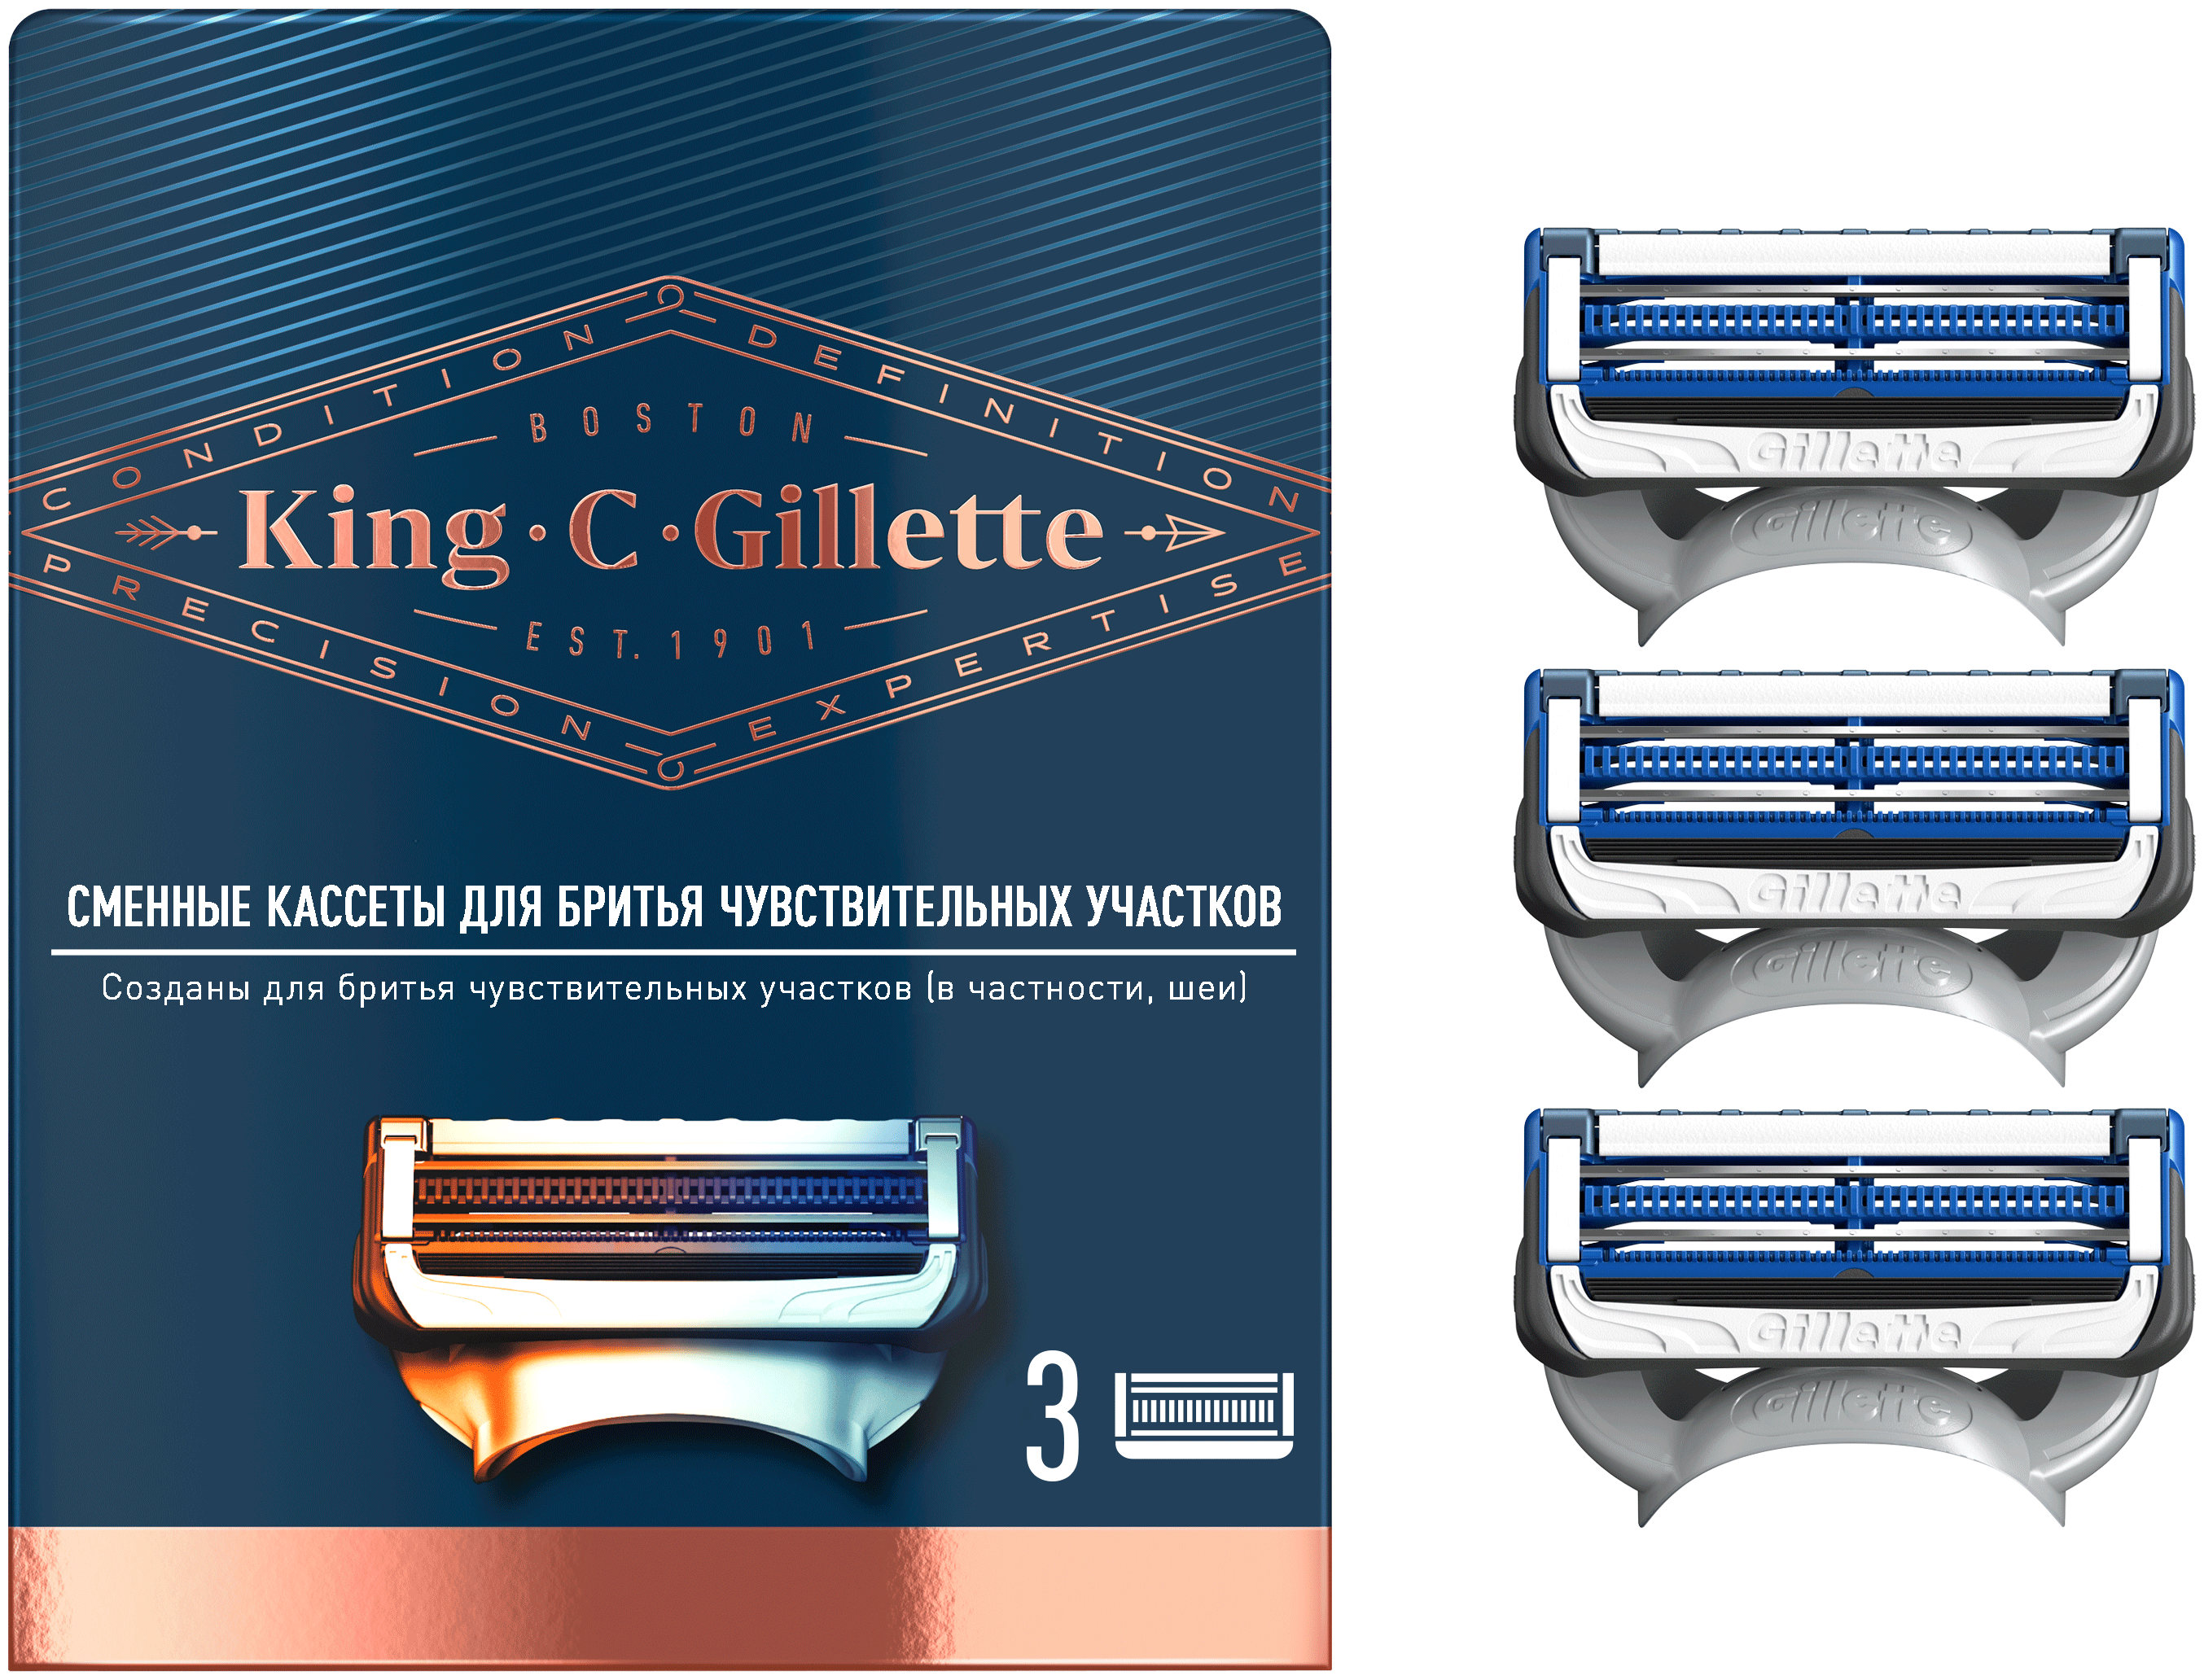 Сменные кассеты Gillette с 2 лезвиями для бритья чувствительных участков